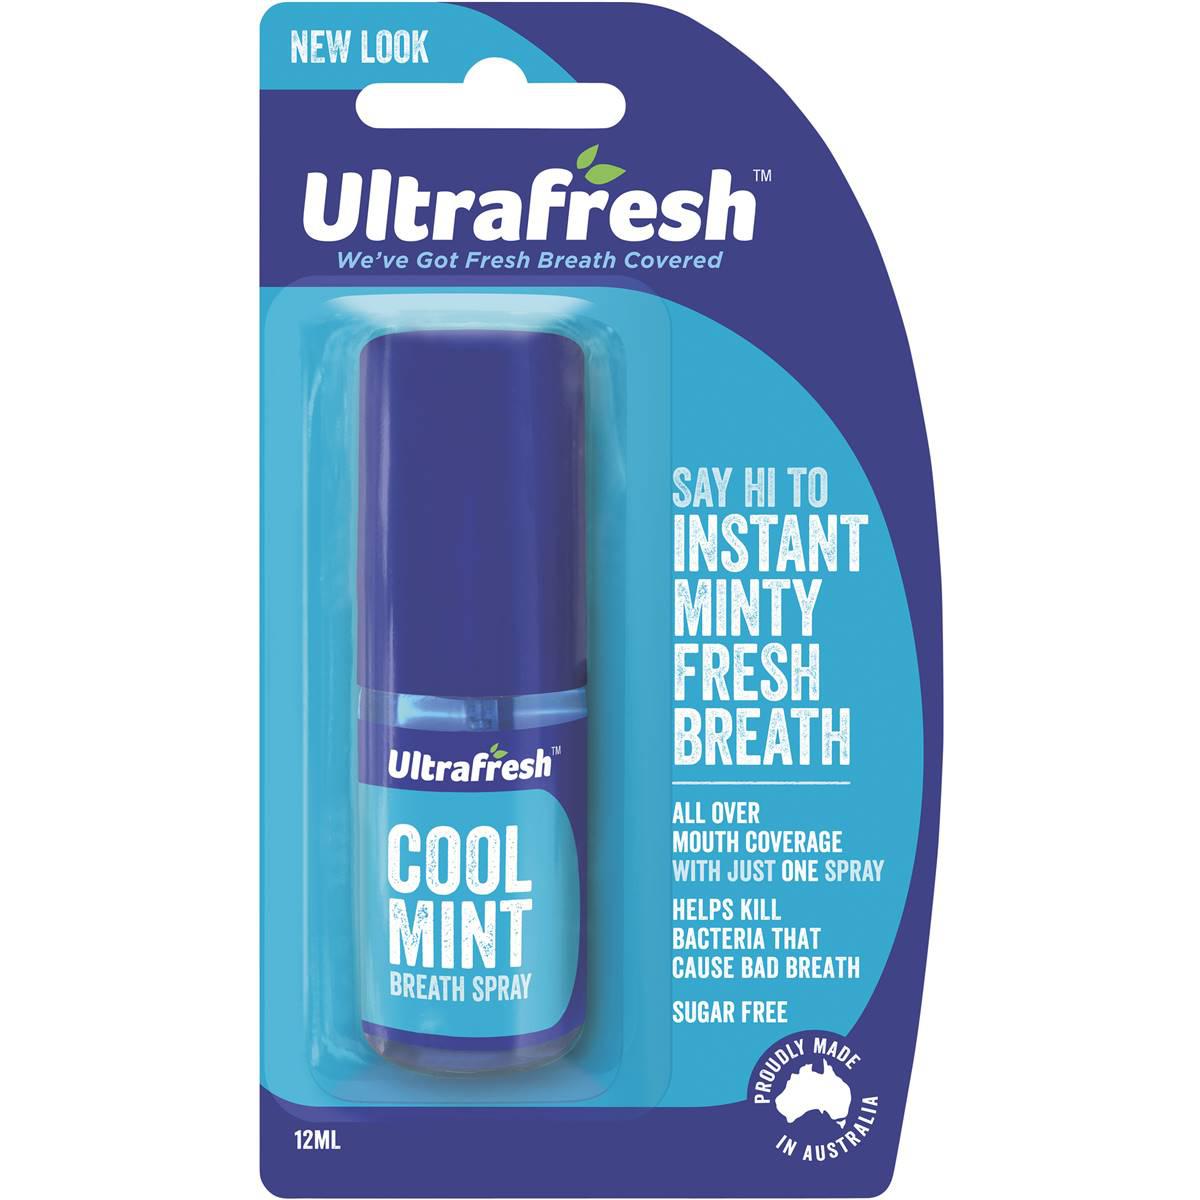 Ultrafresh Breath Fresheners Cool Mint Spray 12ml